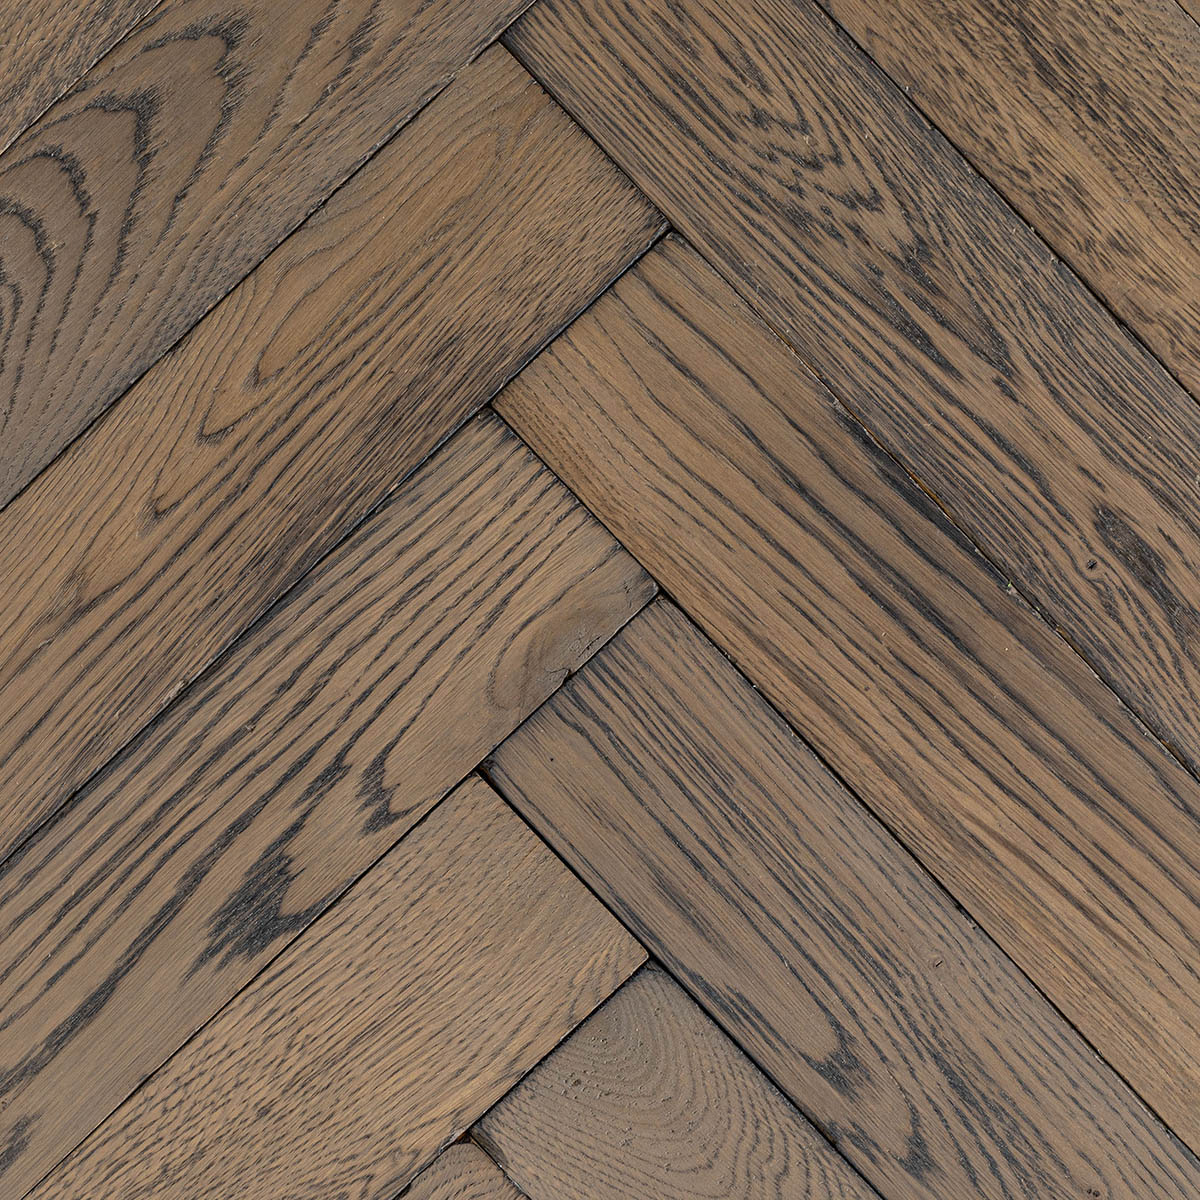 Vine Lane - Solid Oak Distressed Herringbone Floor